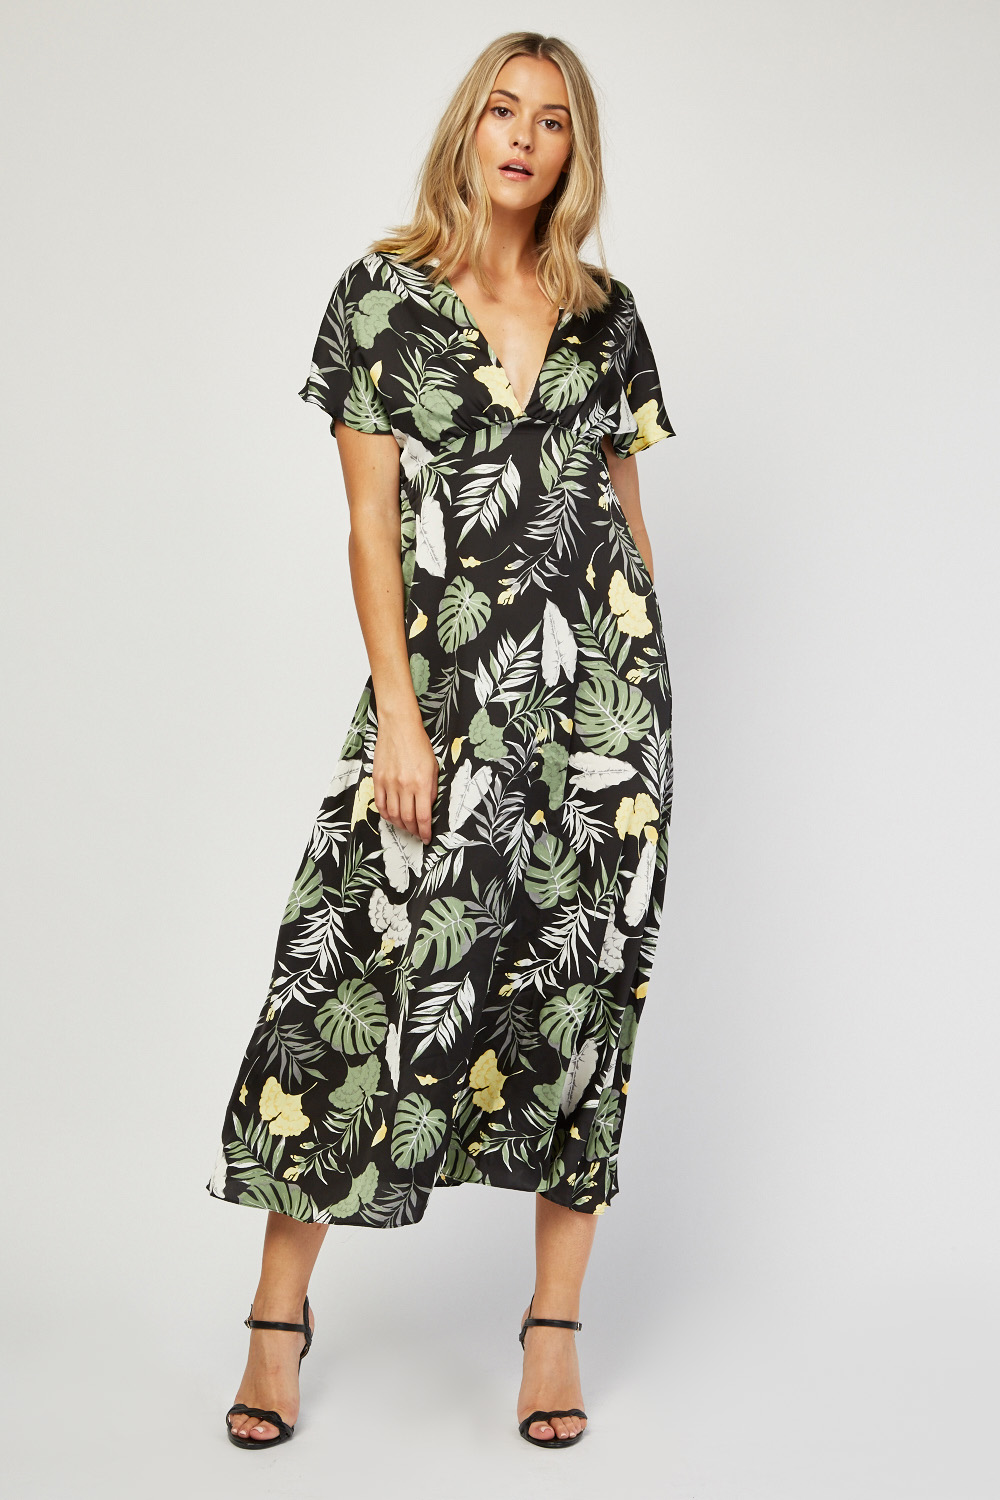 Palm leaf Print Midi Dress - Just $7